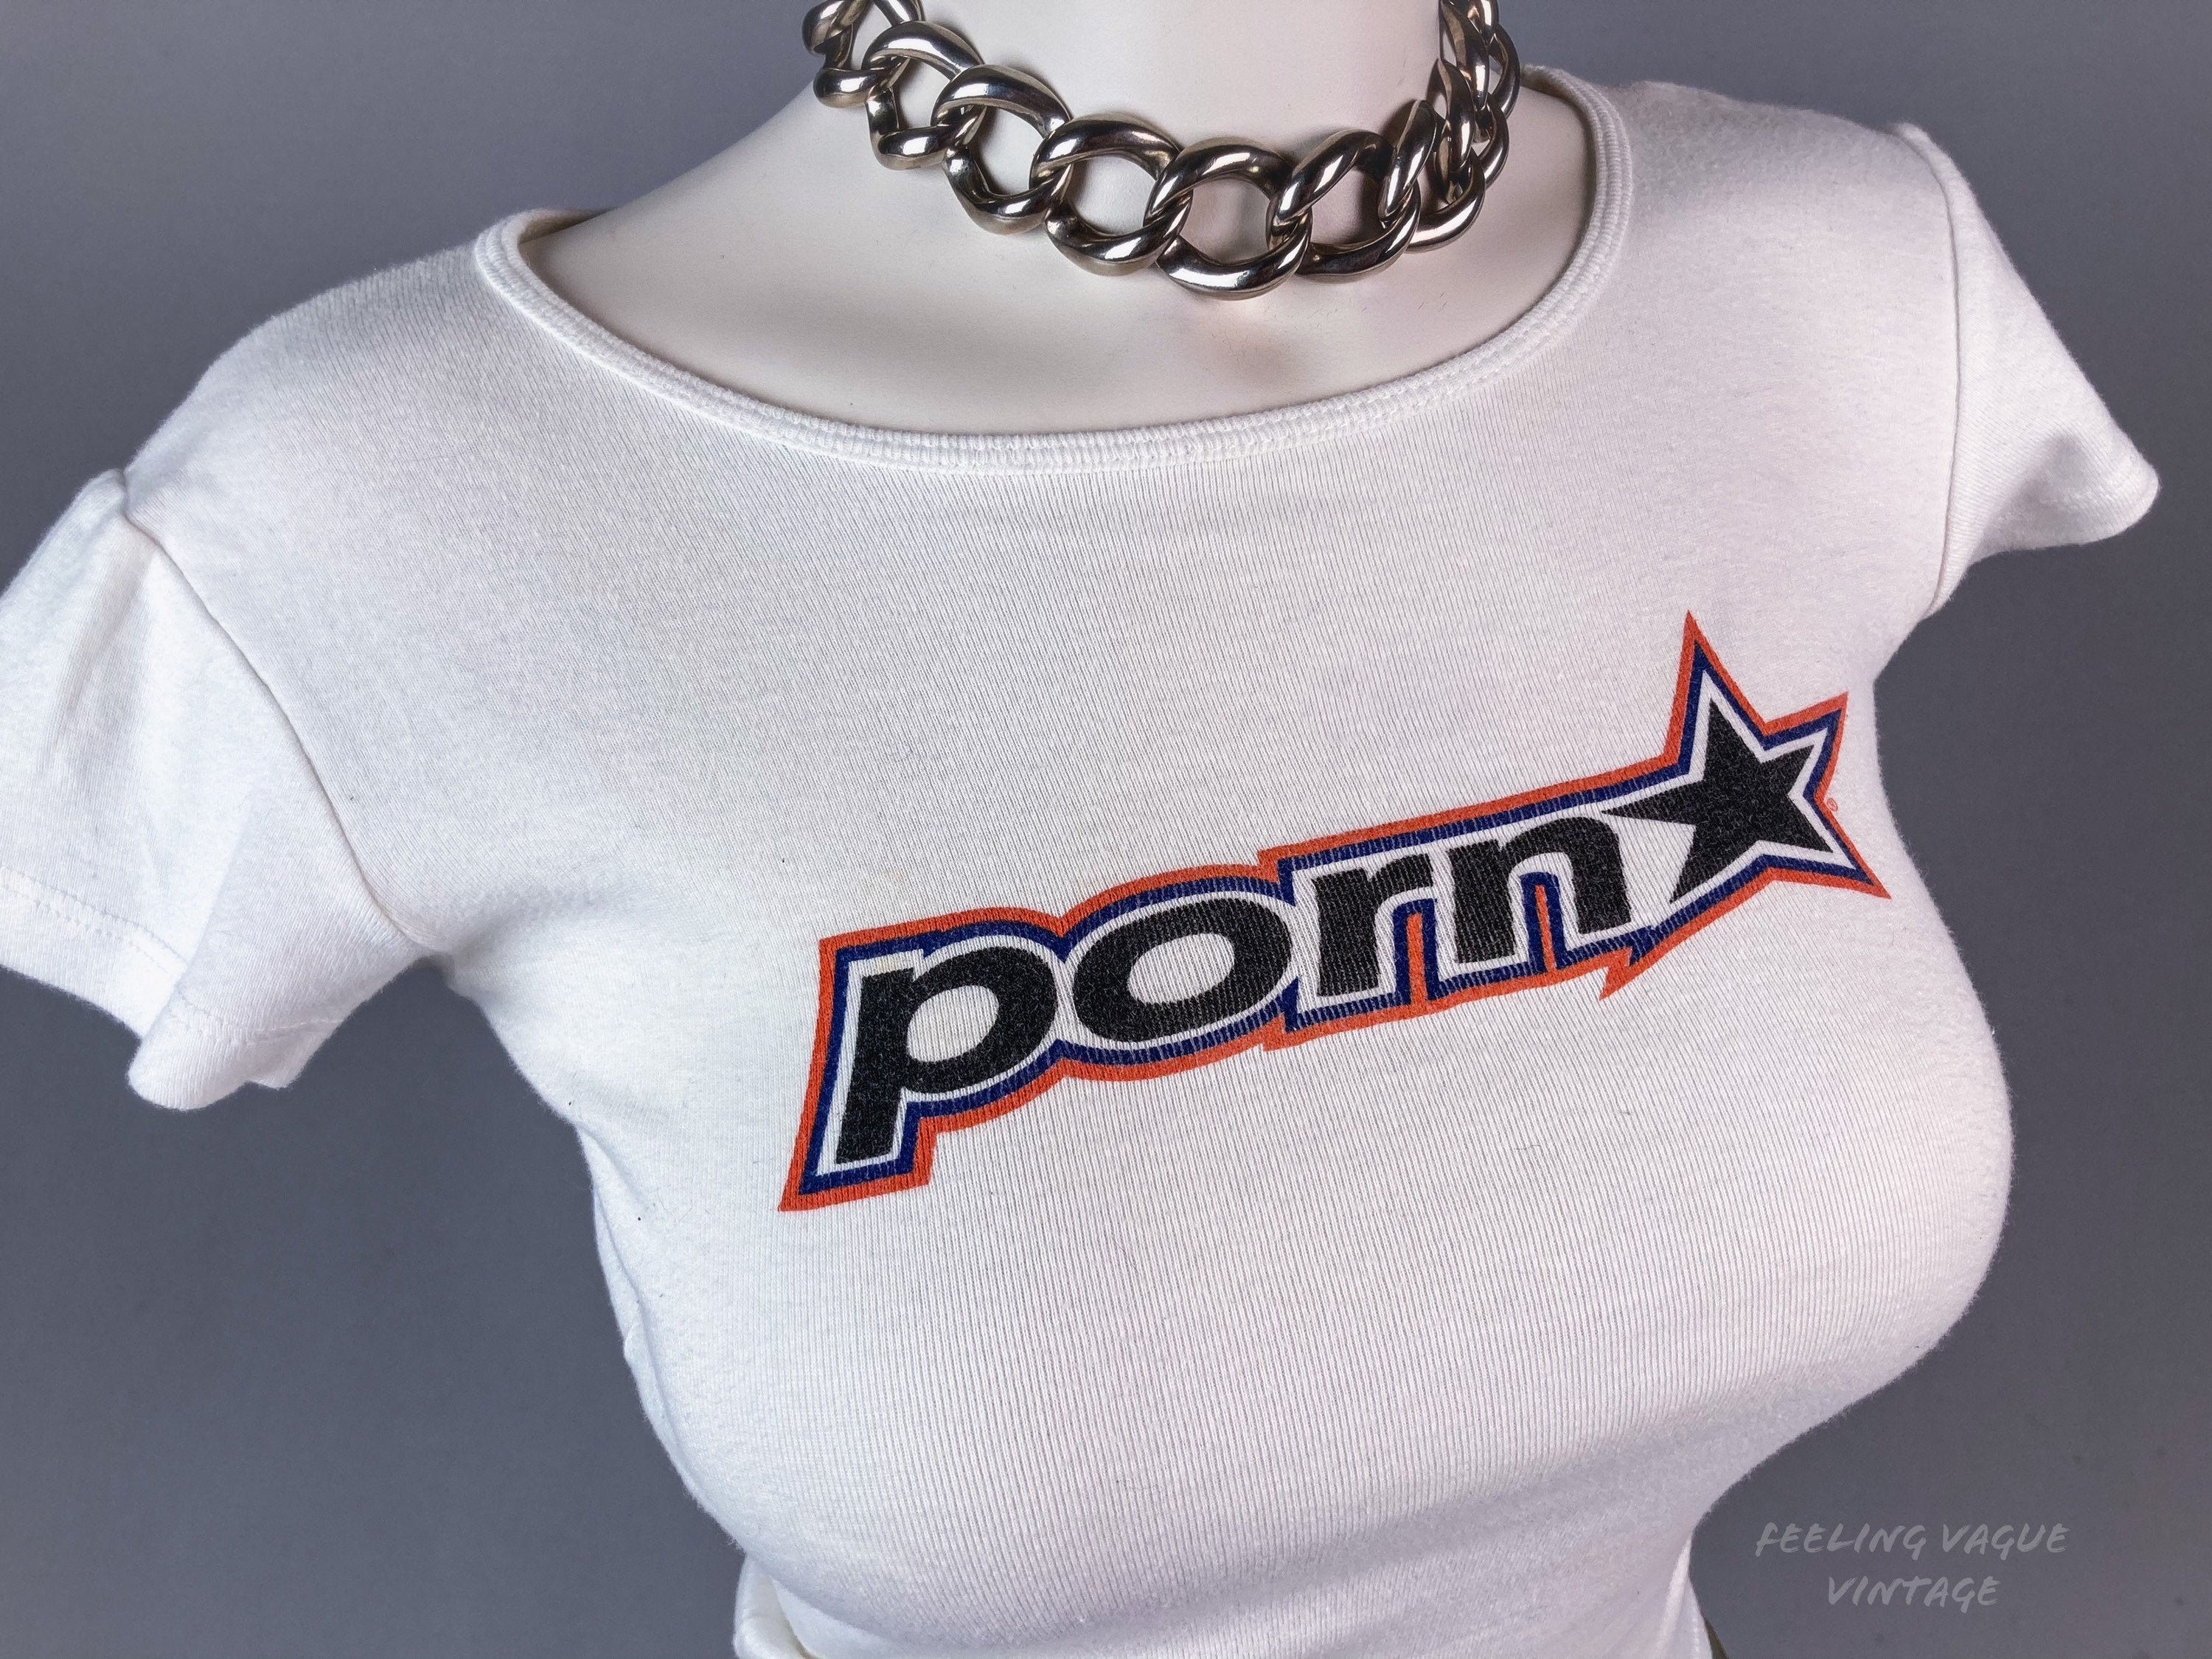 Vintage 90's Skate Brand PORN STAR Hookups T Shirt Top // S M